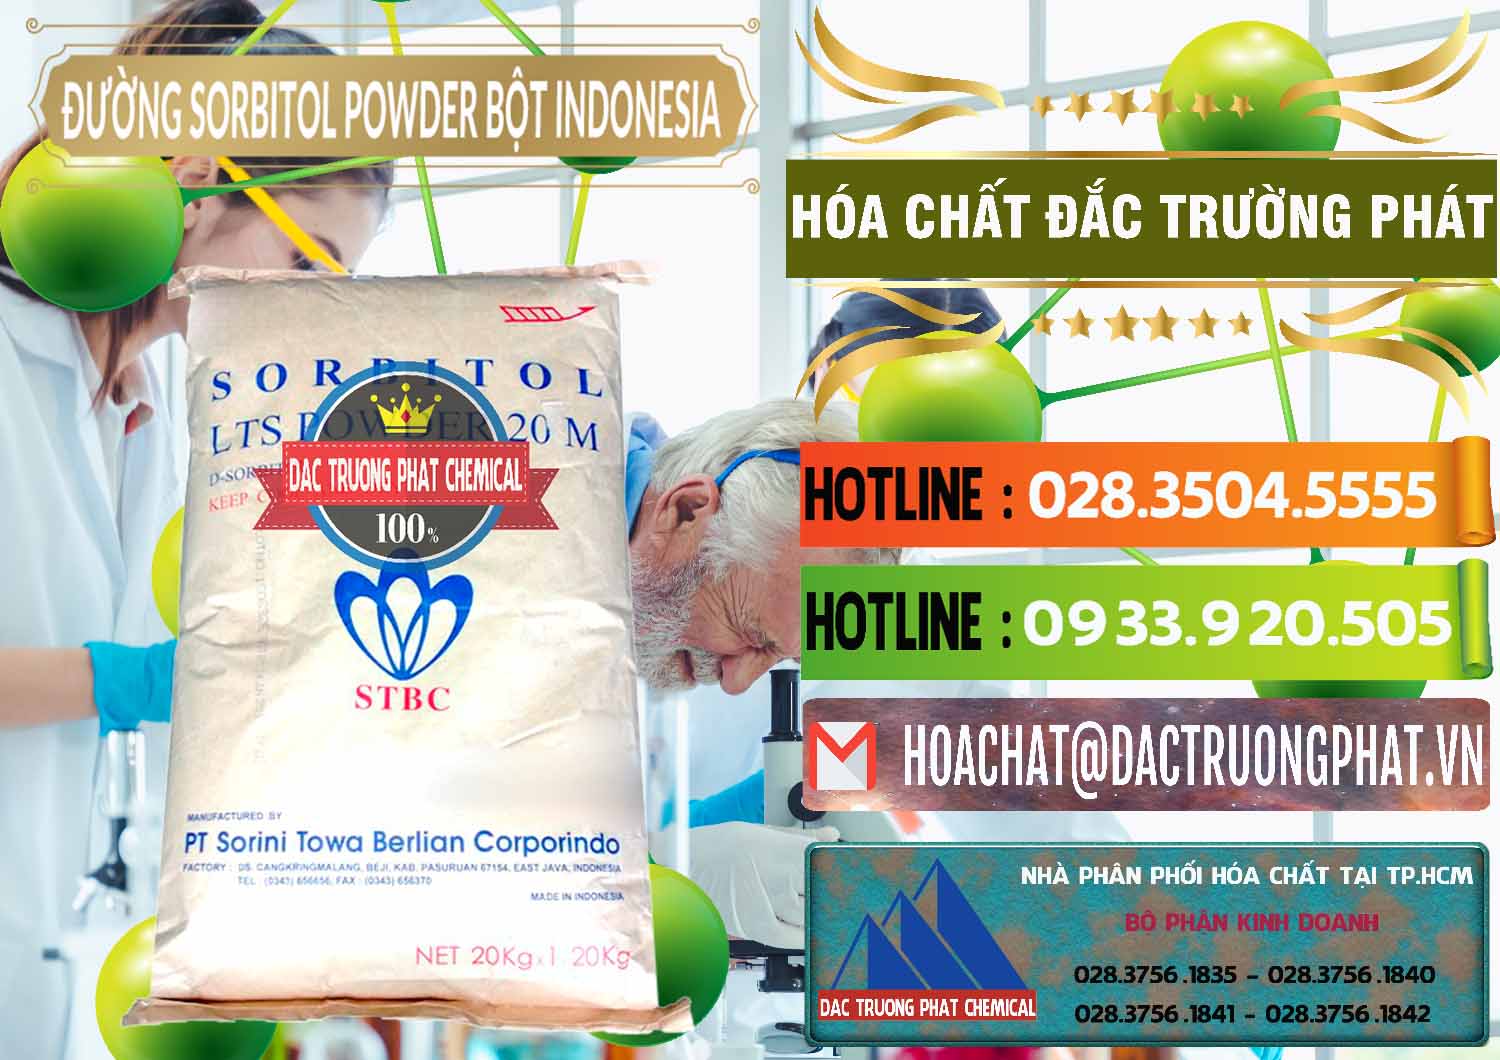 Đơn vị chuyên bán & cung cấp D-Sorbitol Bột - C6H14O6 Food Grade Indonesia - 0320 - Cty cung cấp và phân phối hóa chất tại TP.HCM - cungcaphoachat.com.vn